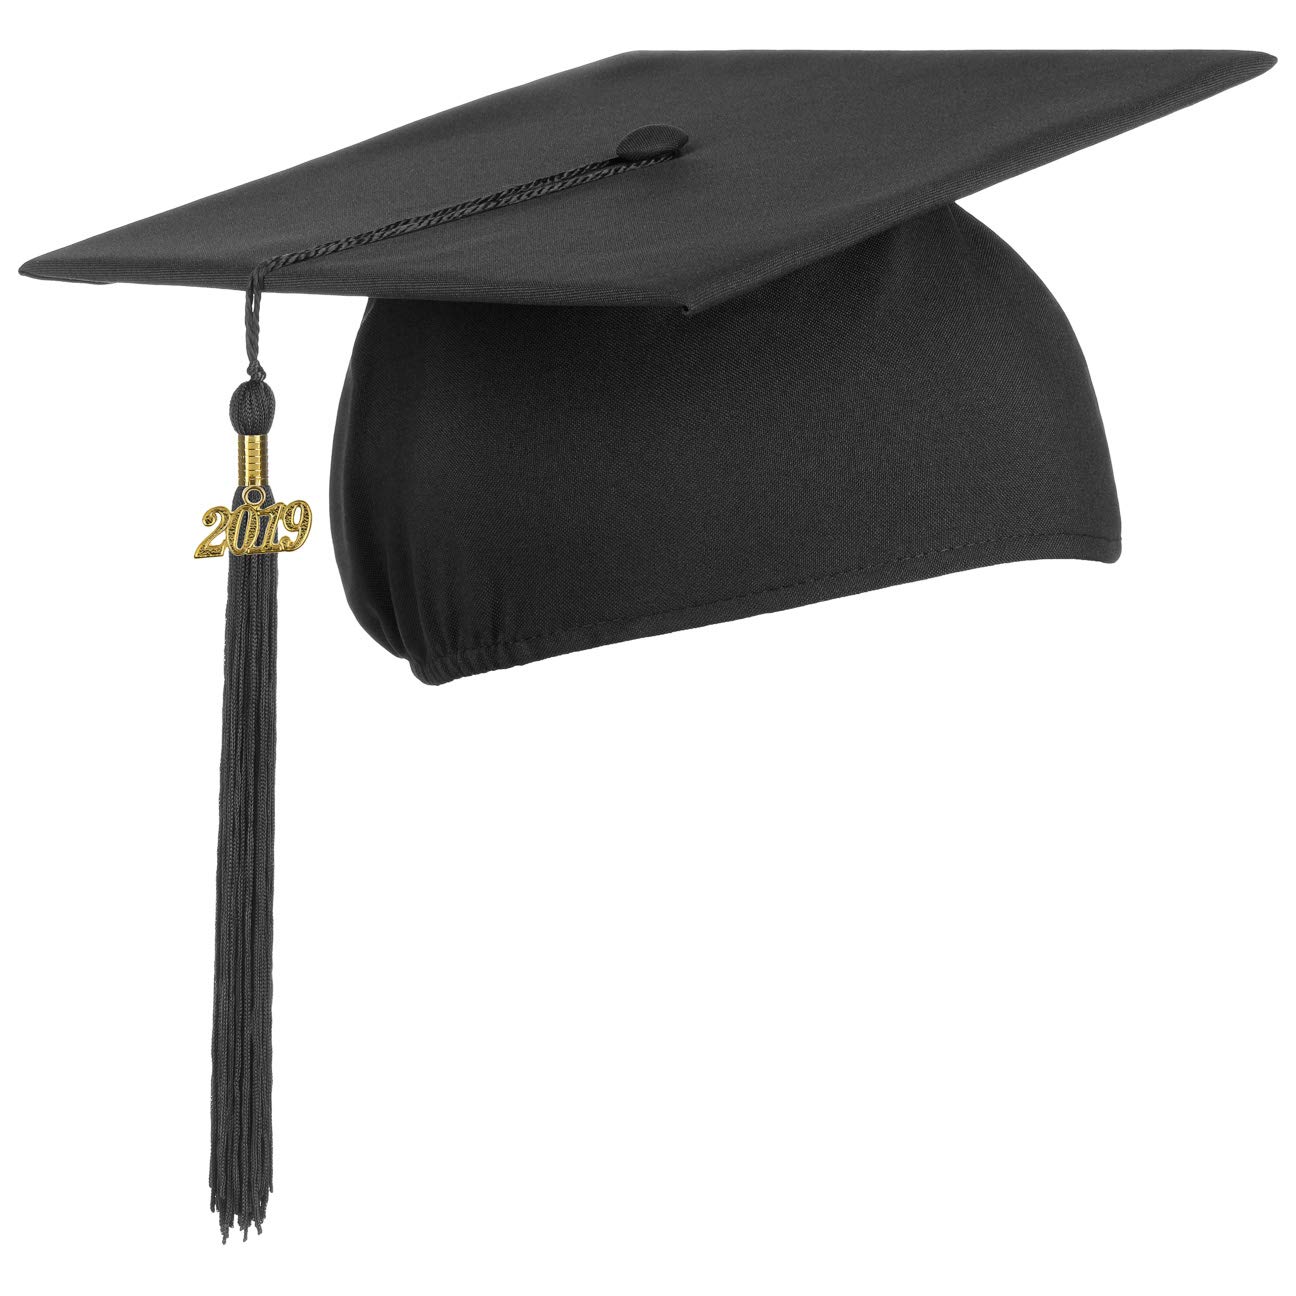 Birrete con colgante 2019, Sombrero de graduación in de estudios universidad instituto